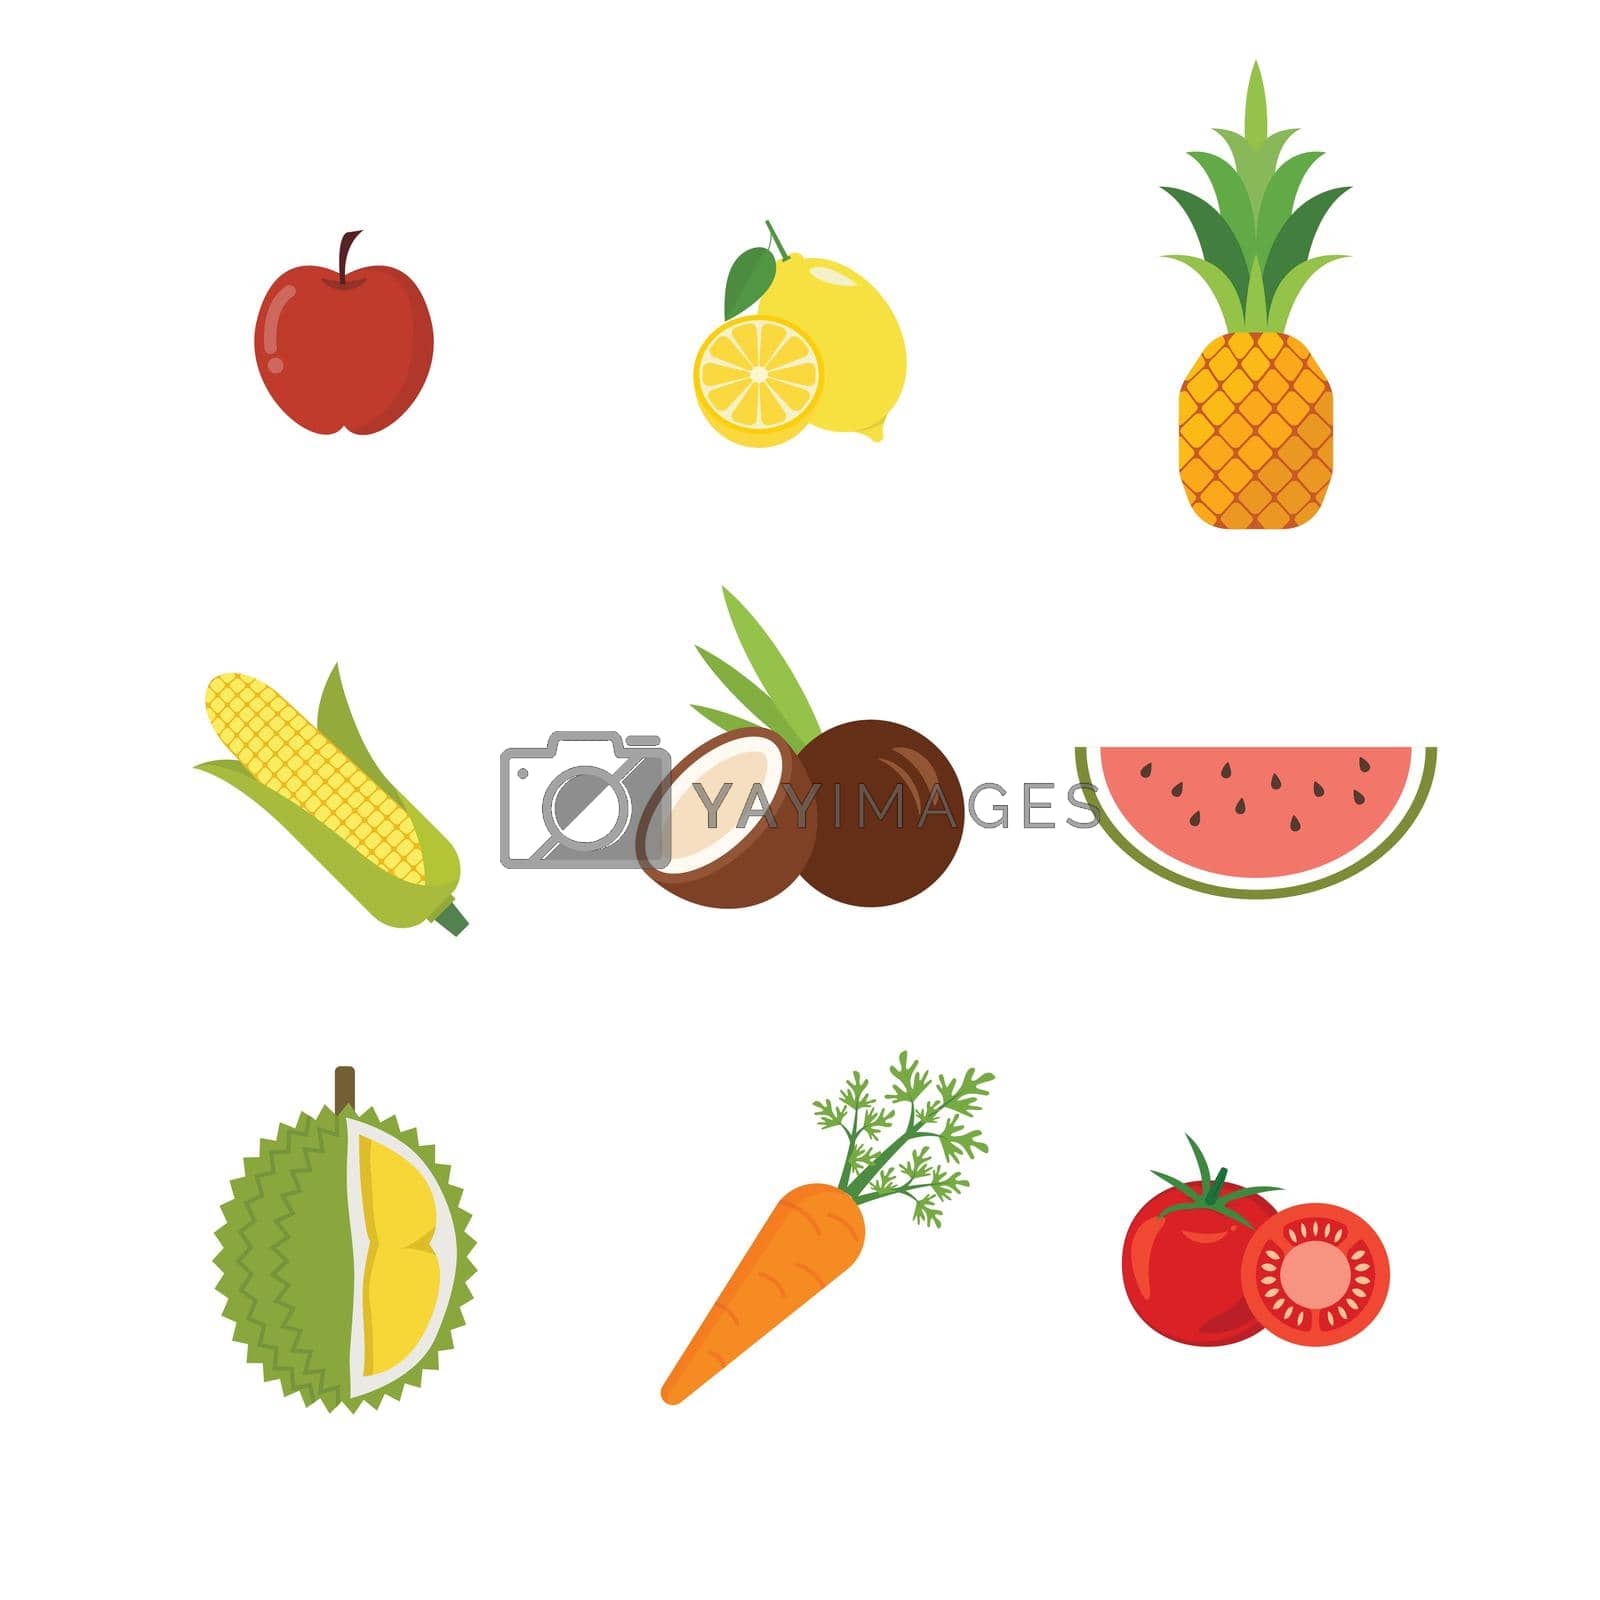 Royalty free image of Seasonal exotic fruits icons set by siraanamwong